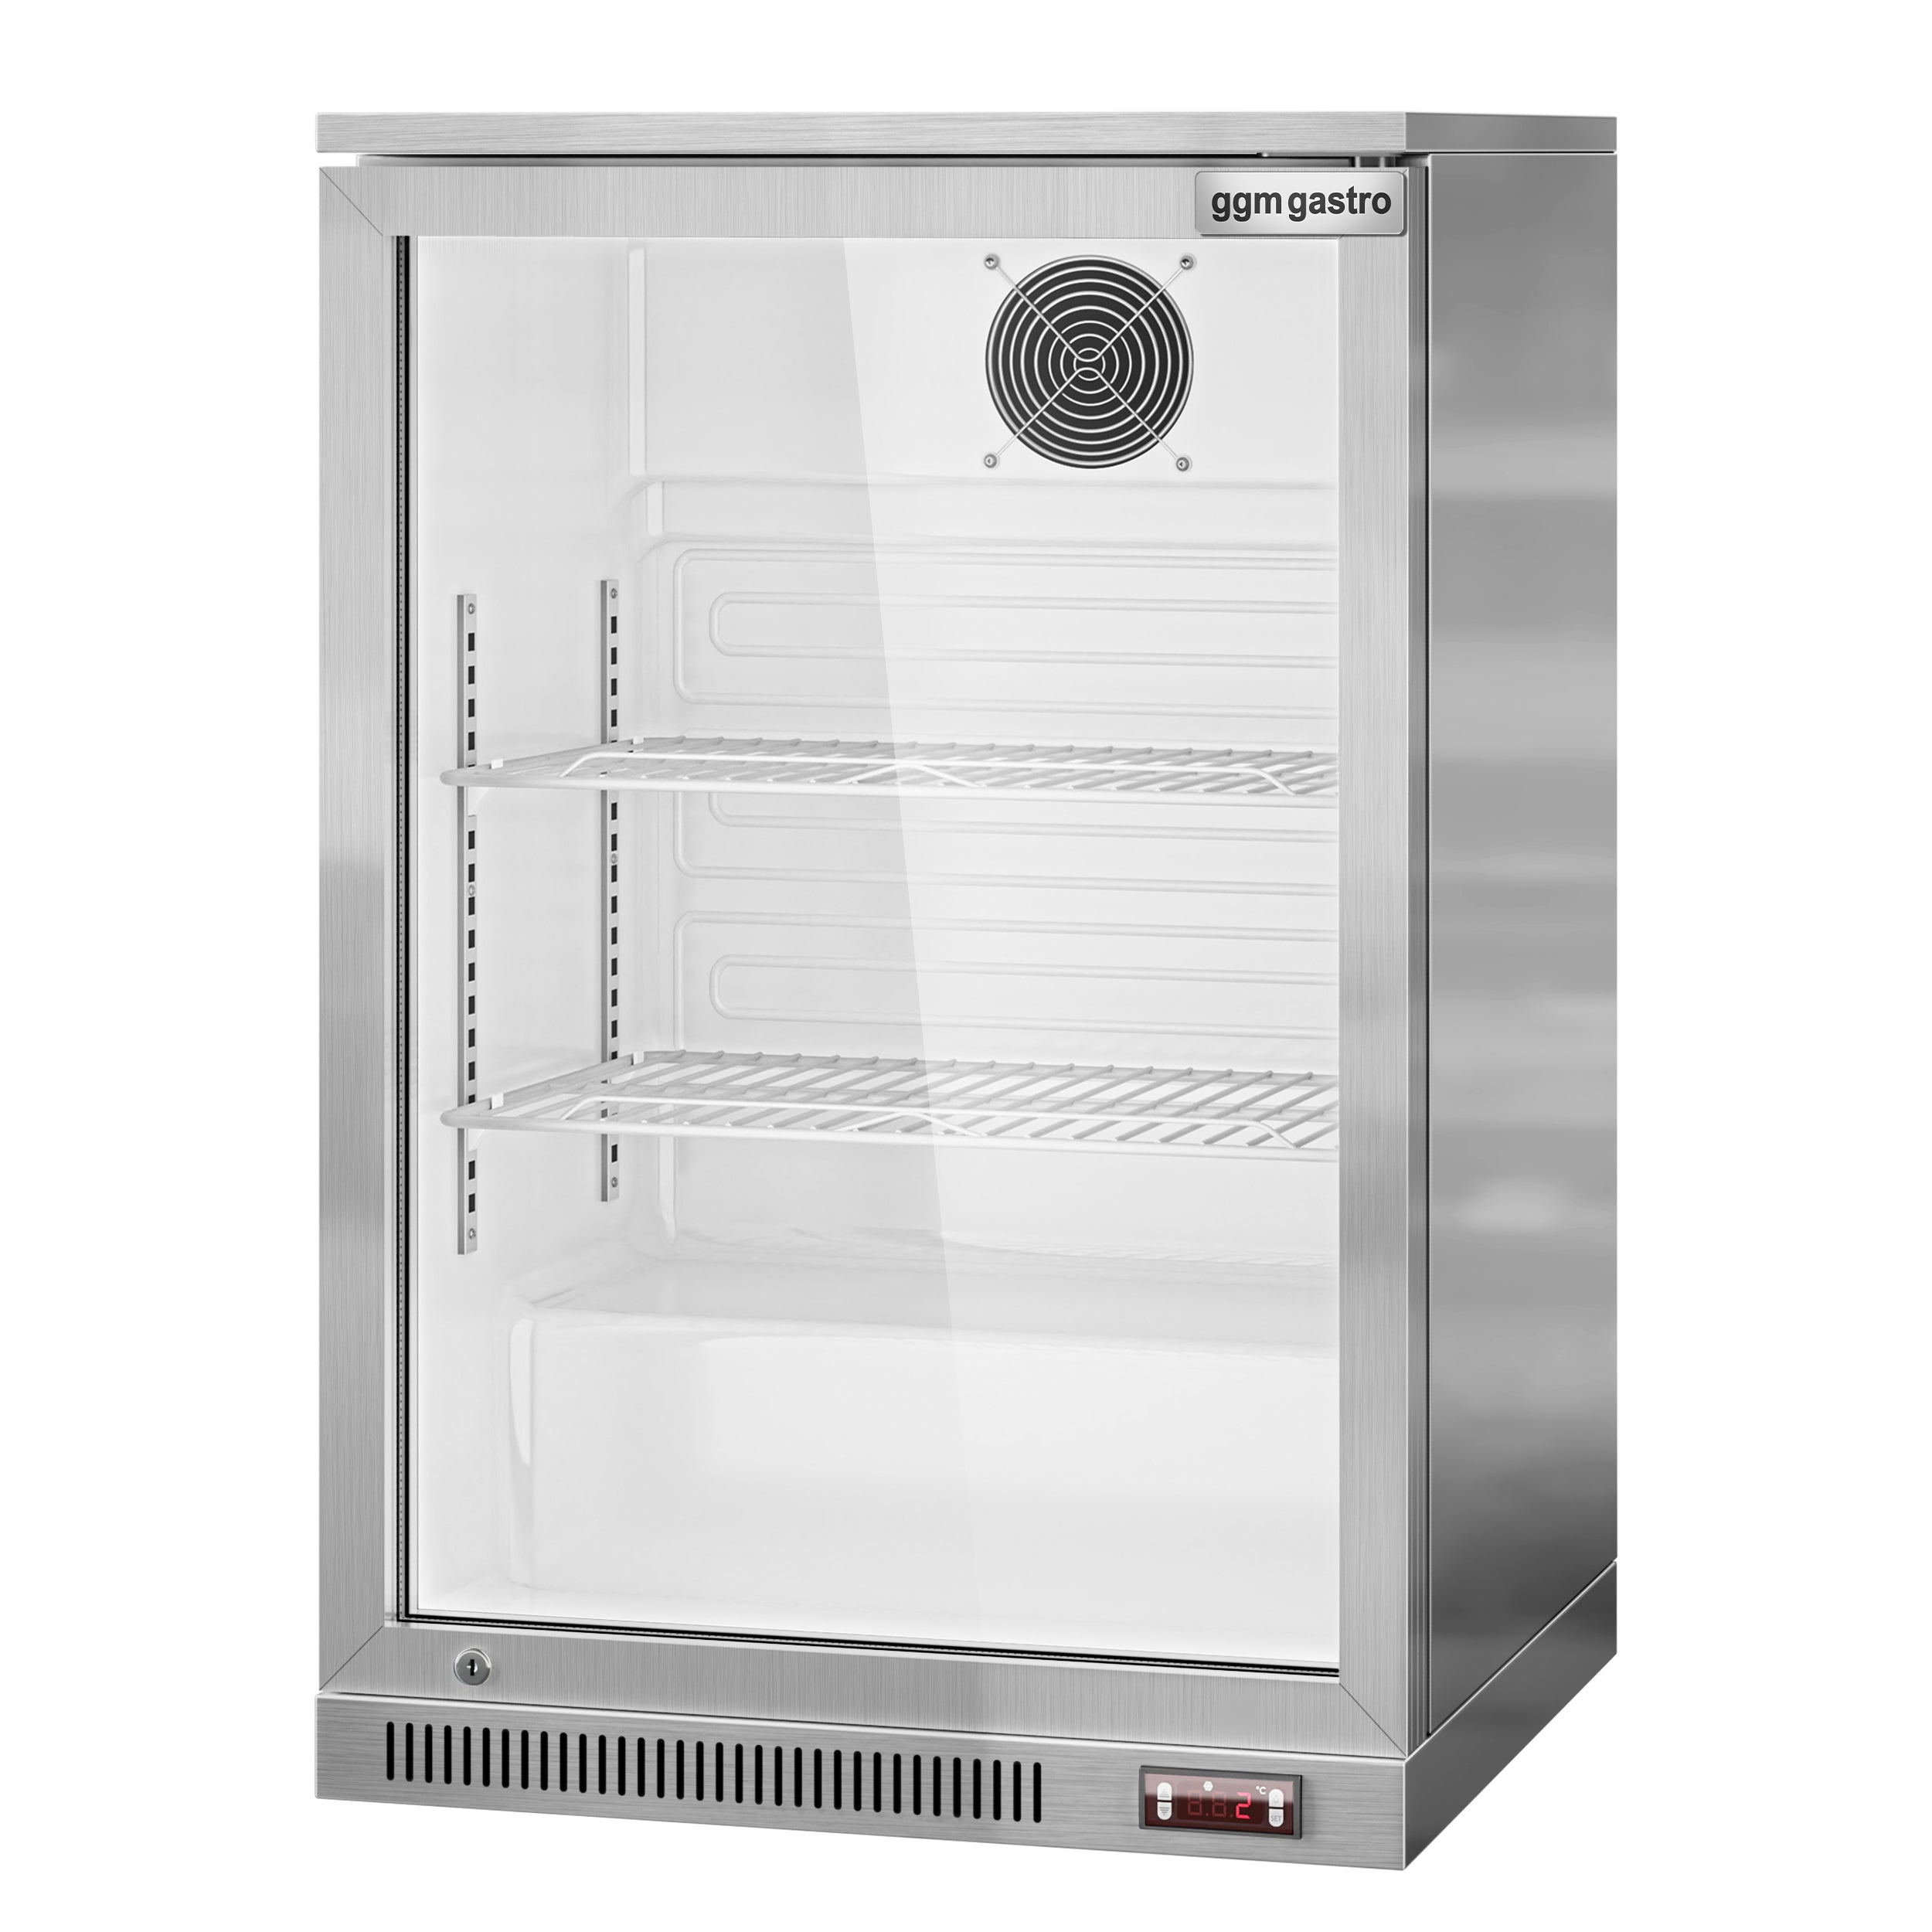 Bar kjøleskap - 0,6 m - 130 liter - 1 glassdør